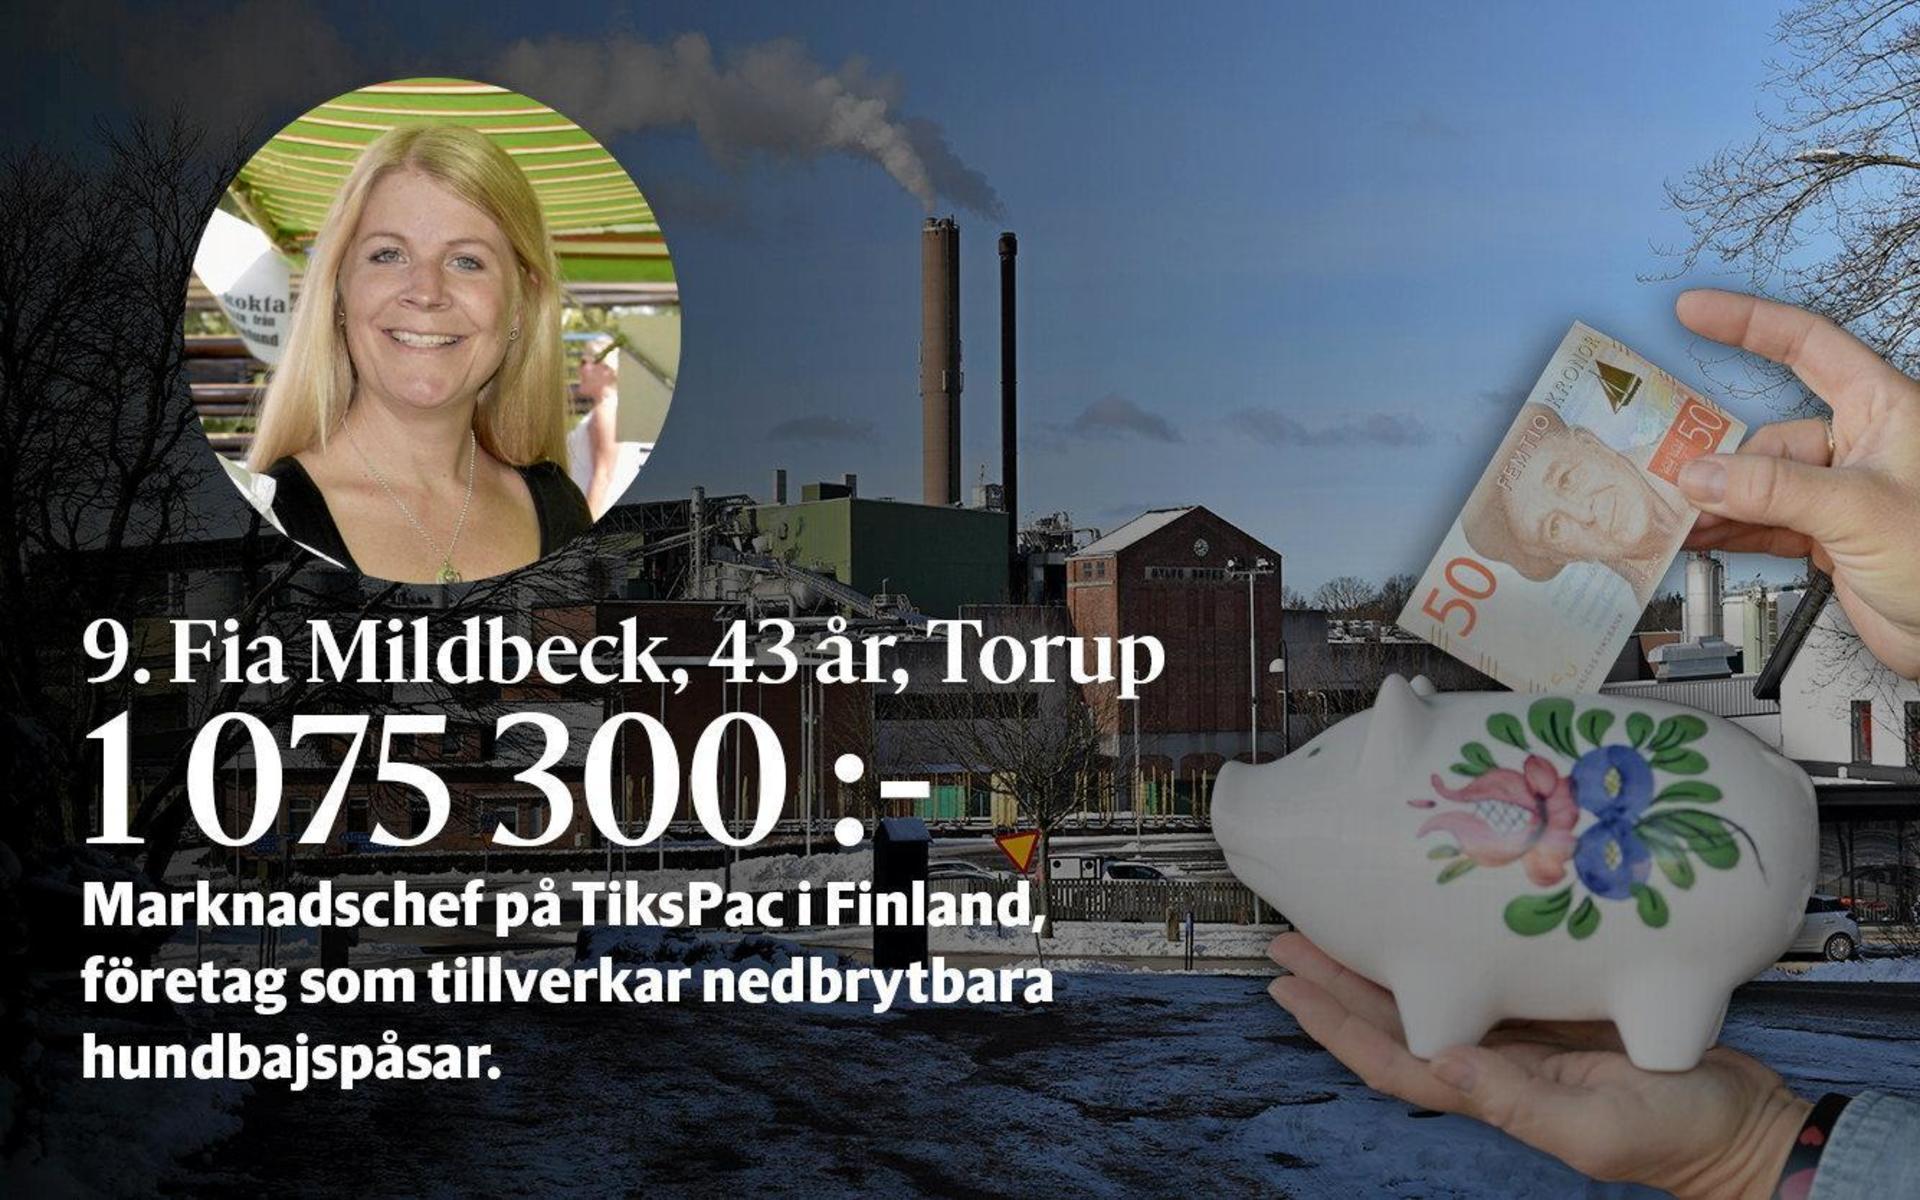 9. Fia Mildbeck är marknadschef på TiksPac i Finland, ett företag som tillverkar nedbrytbara hundbajspåsar.